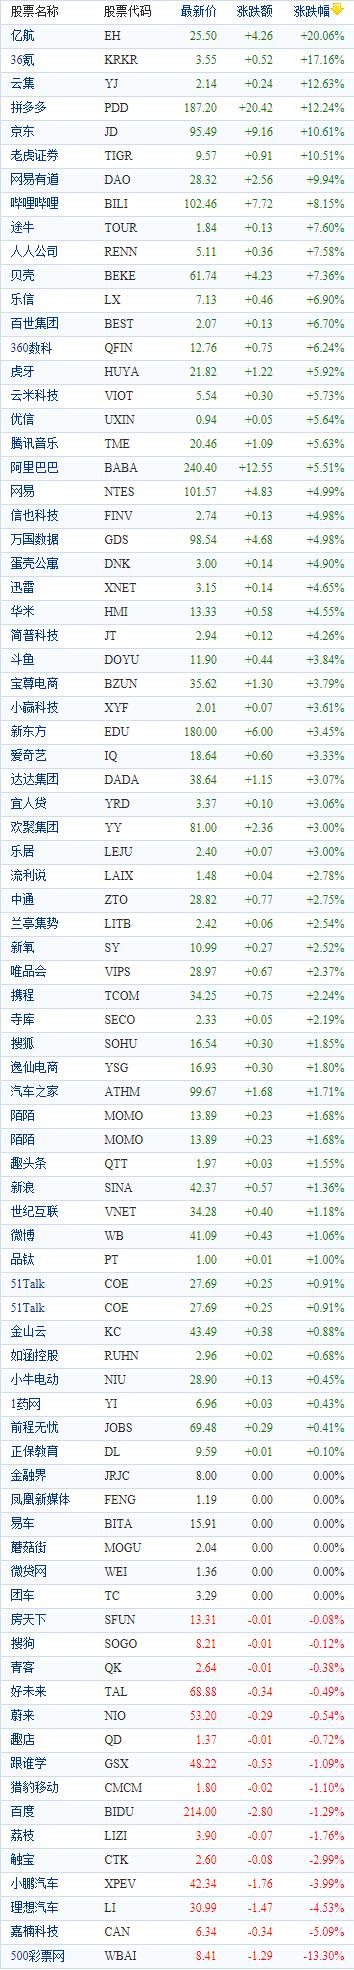 中国概念股周二收盘多数上涨 拼多多、京东涨幅均超10%